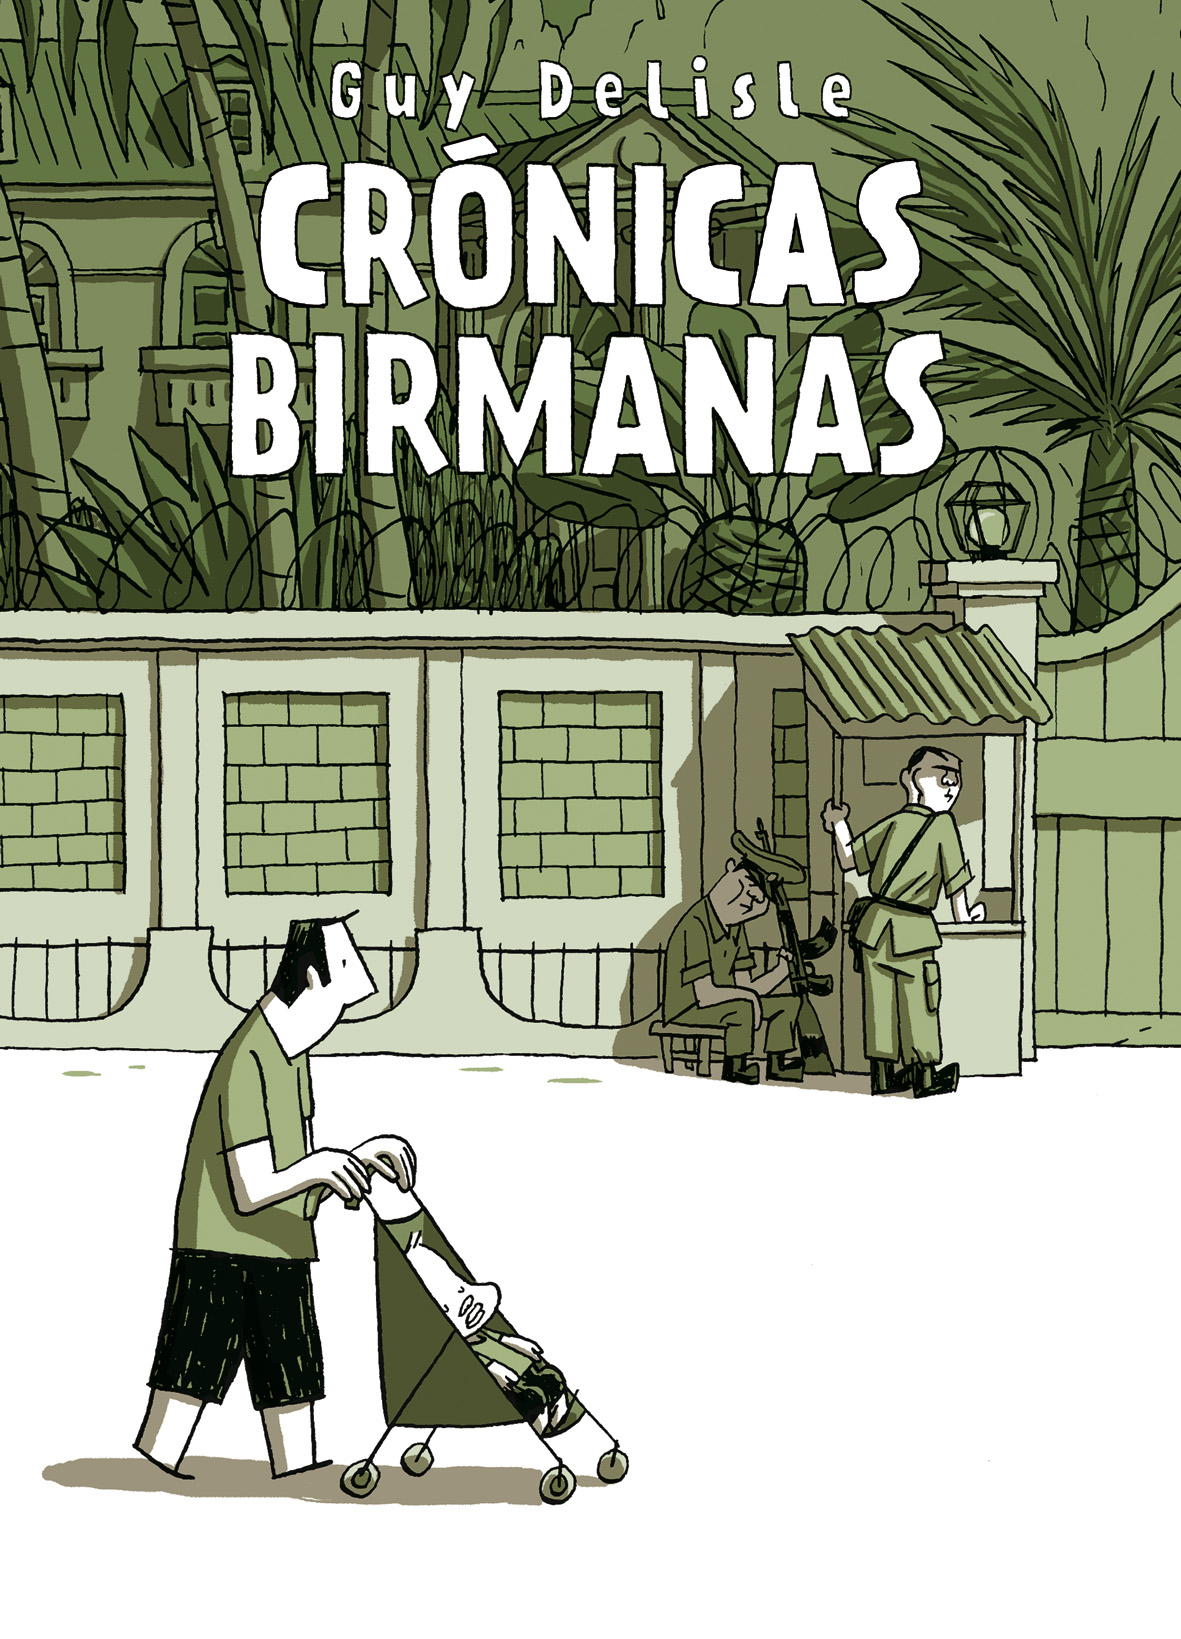 Cubierta del cómic Crónicas birmanas